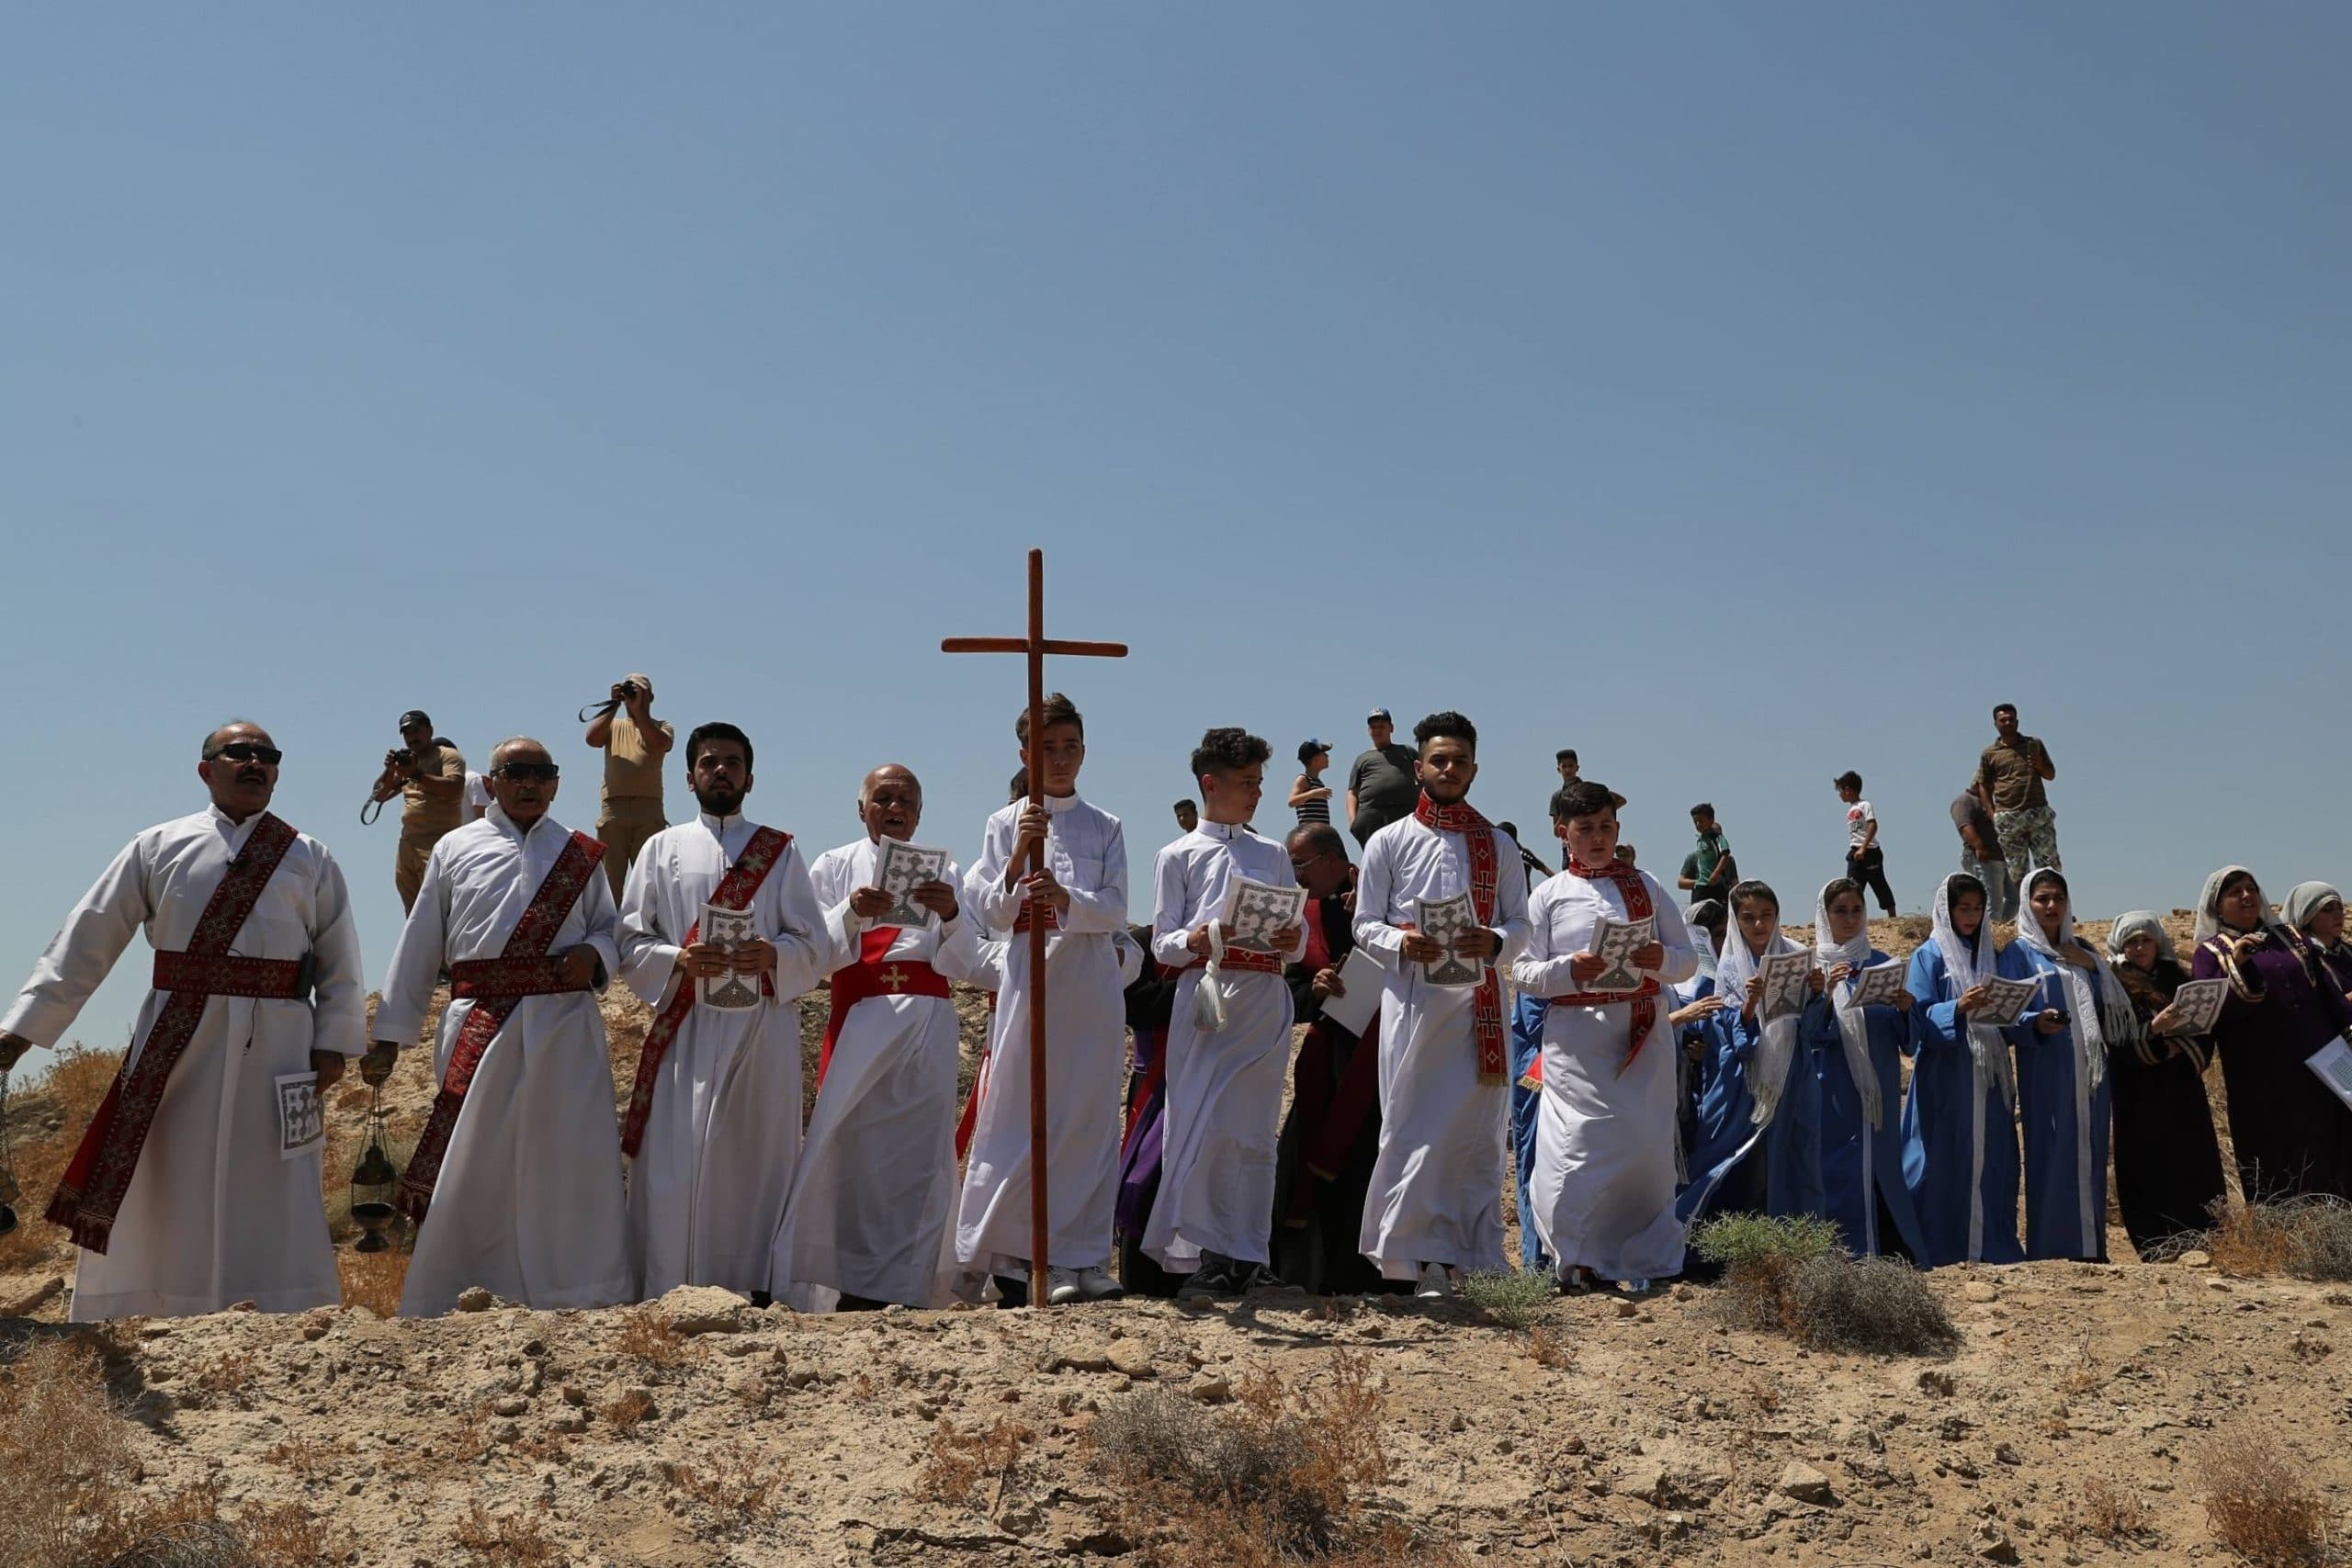 Chrétiens irakiens durant une messe près de Bagdad (c) SIPA/AP Photo/Khalid Mohammed)/BKM104/19235594227041//1908231854